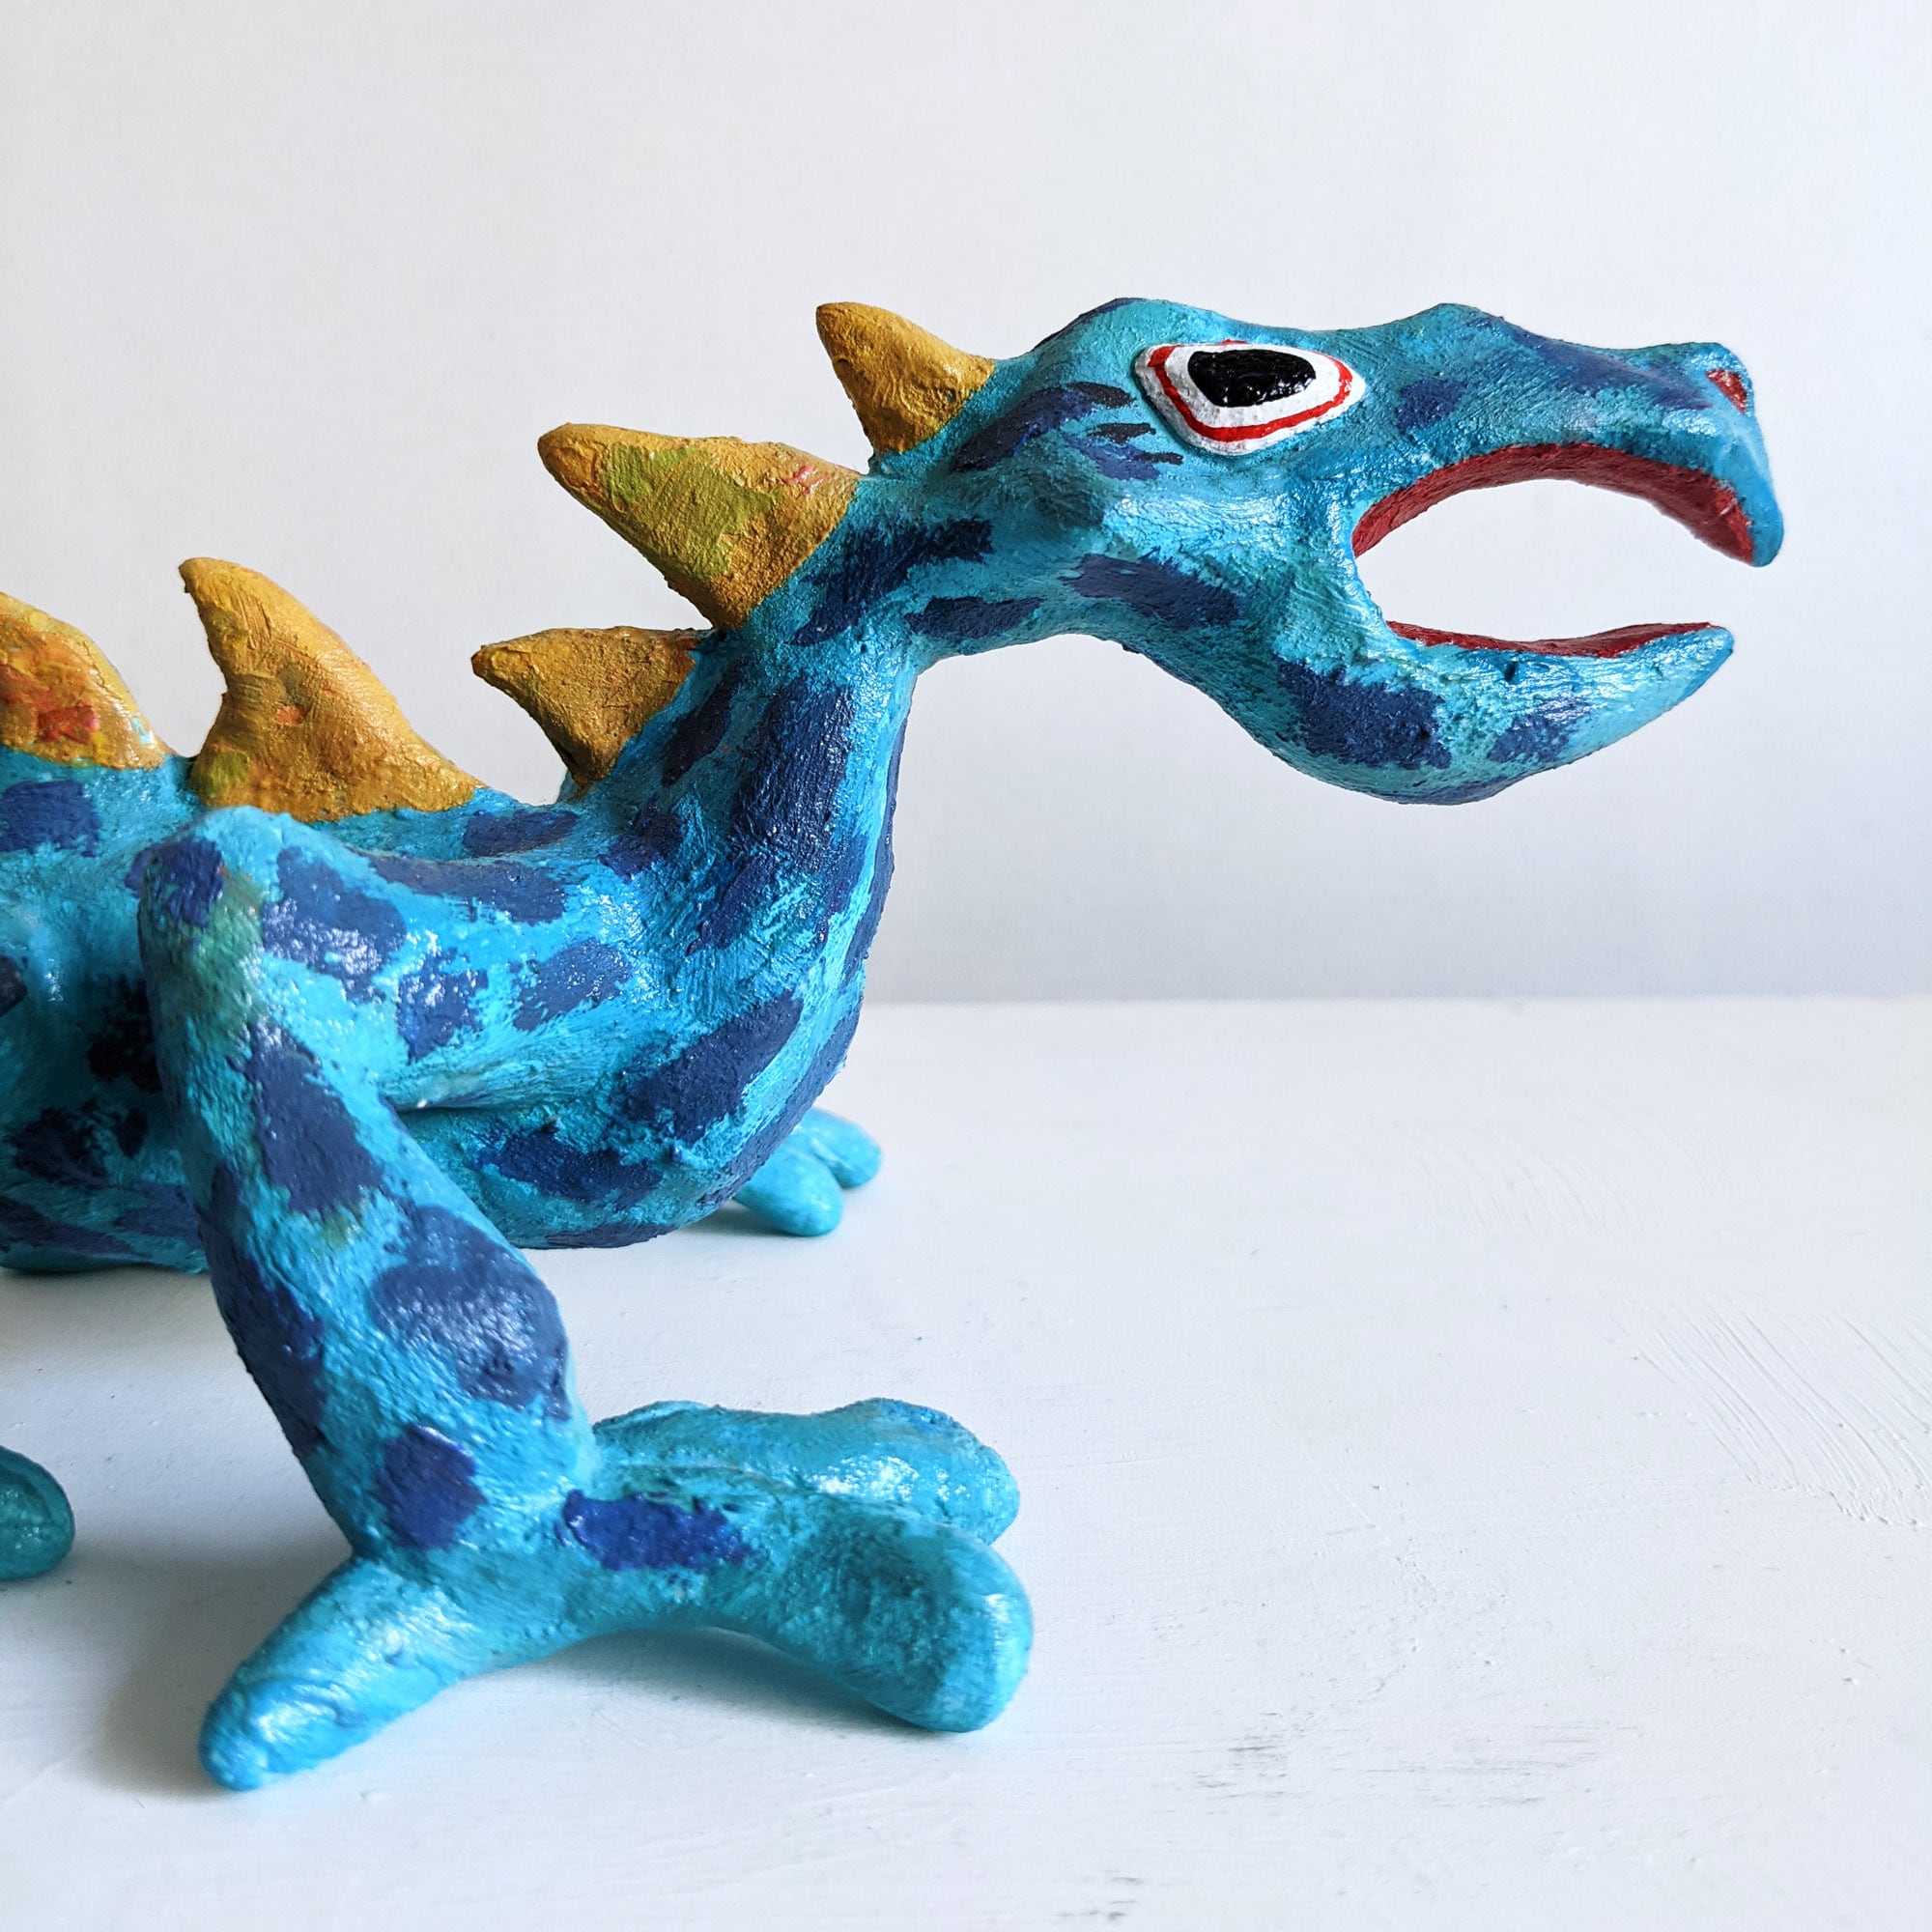 【1点物】水色のトカゲのような生き物 / Light blue lizard-like creature